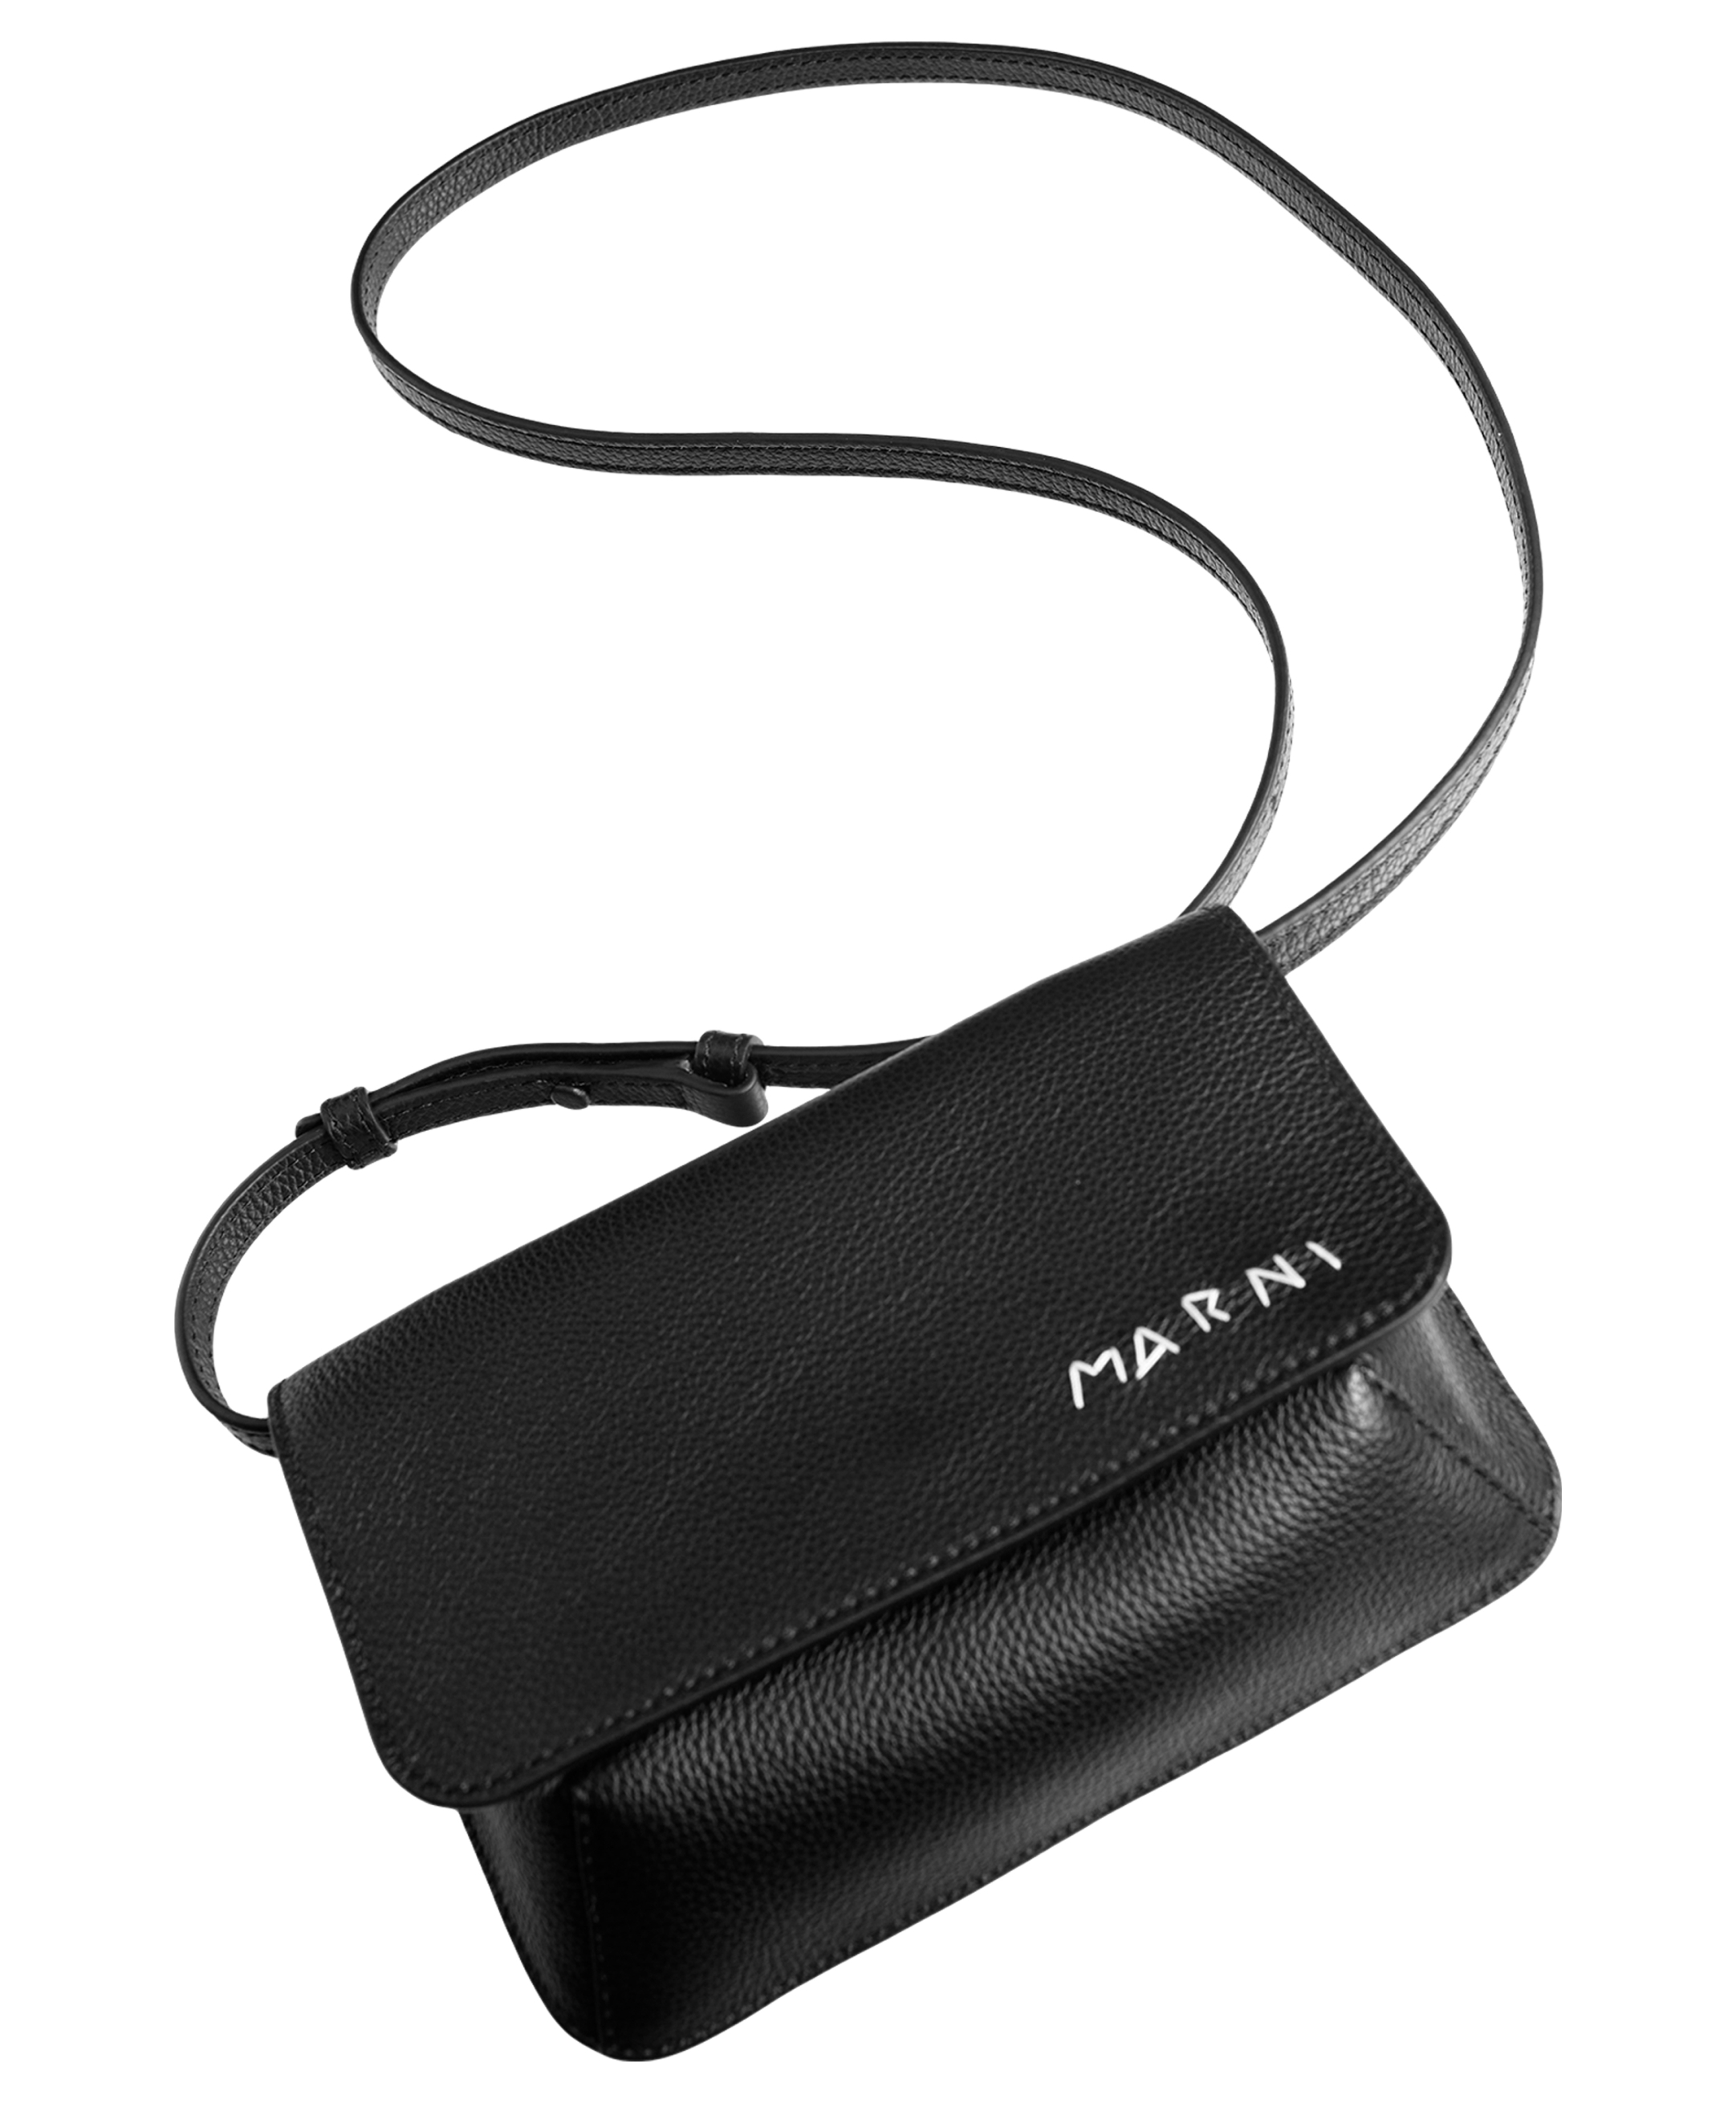 Кожаная сумка с вышитым логотипом Marni PHMO0038L4/P6533/00N99, размер One Size PHMO0038L4/P6533/00N99 - фото 1